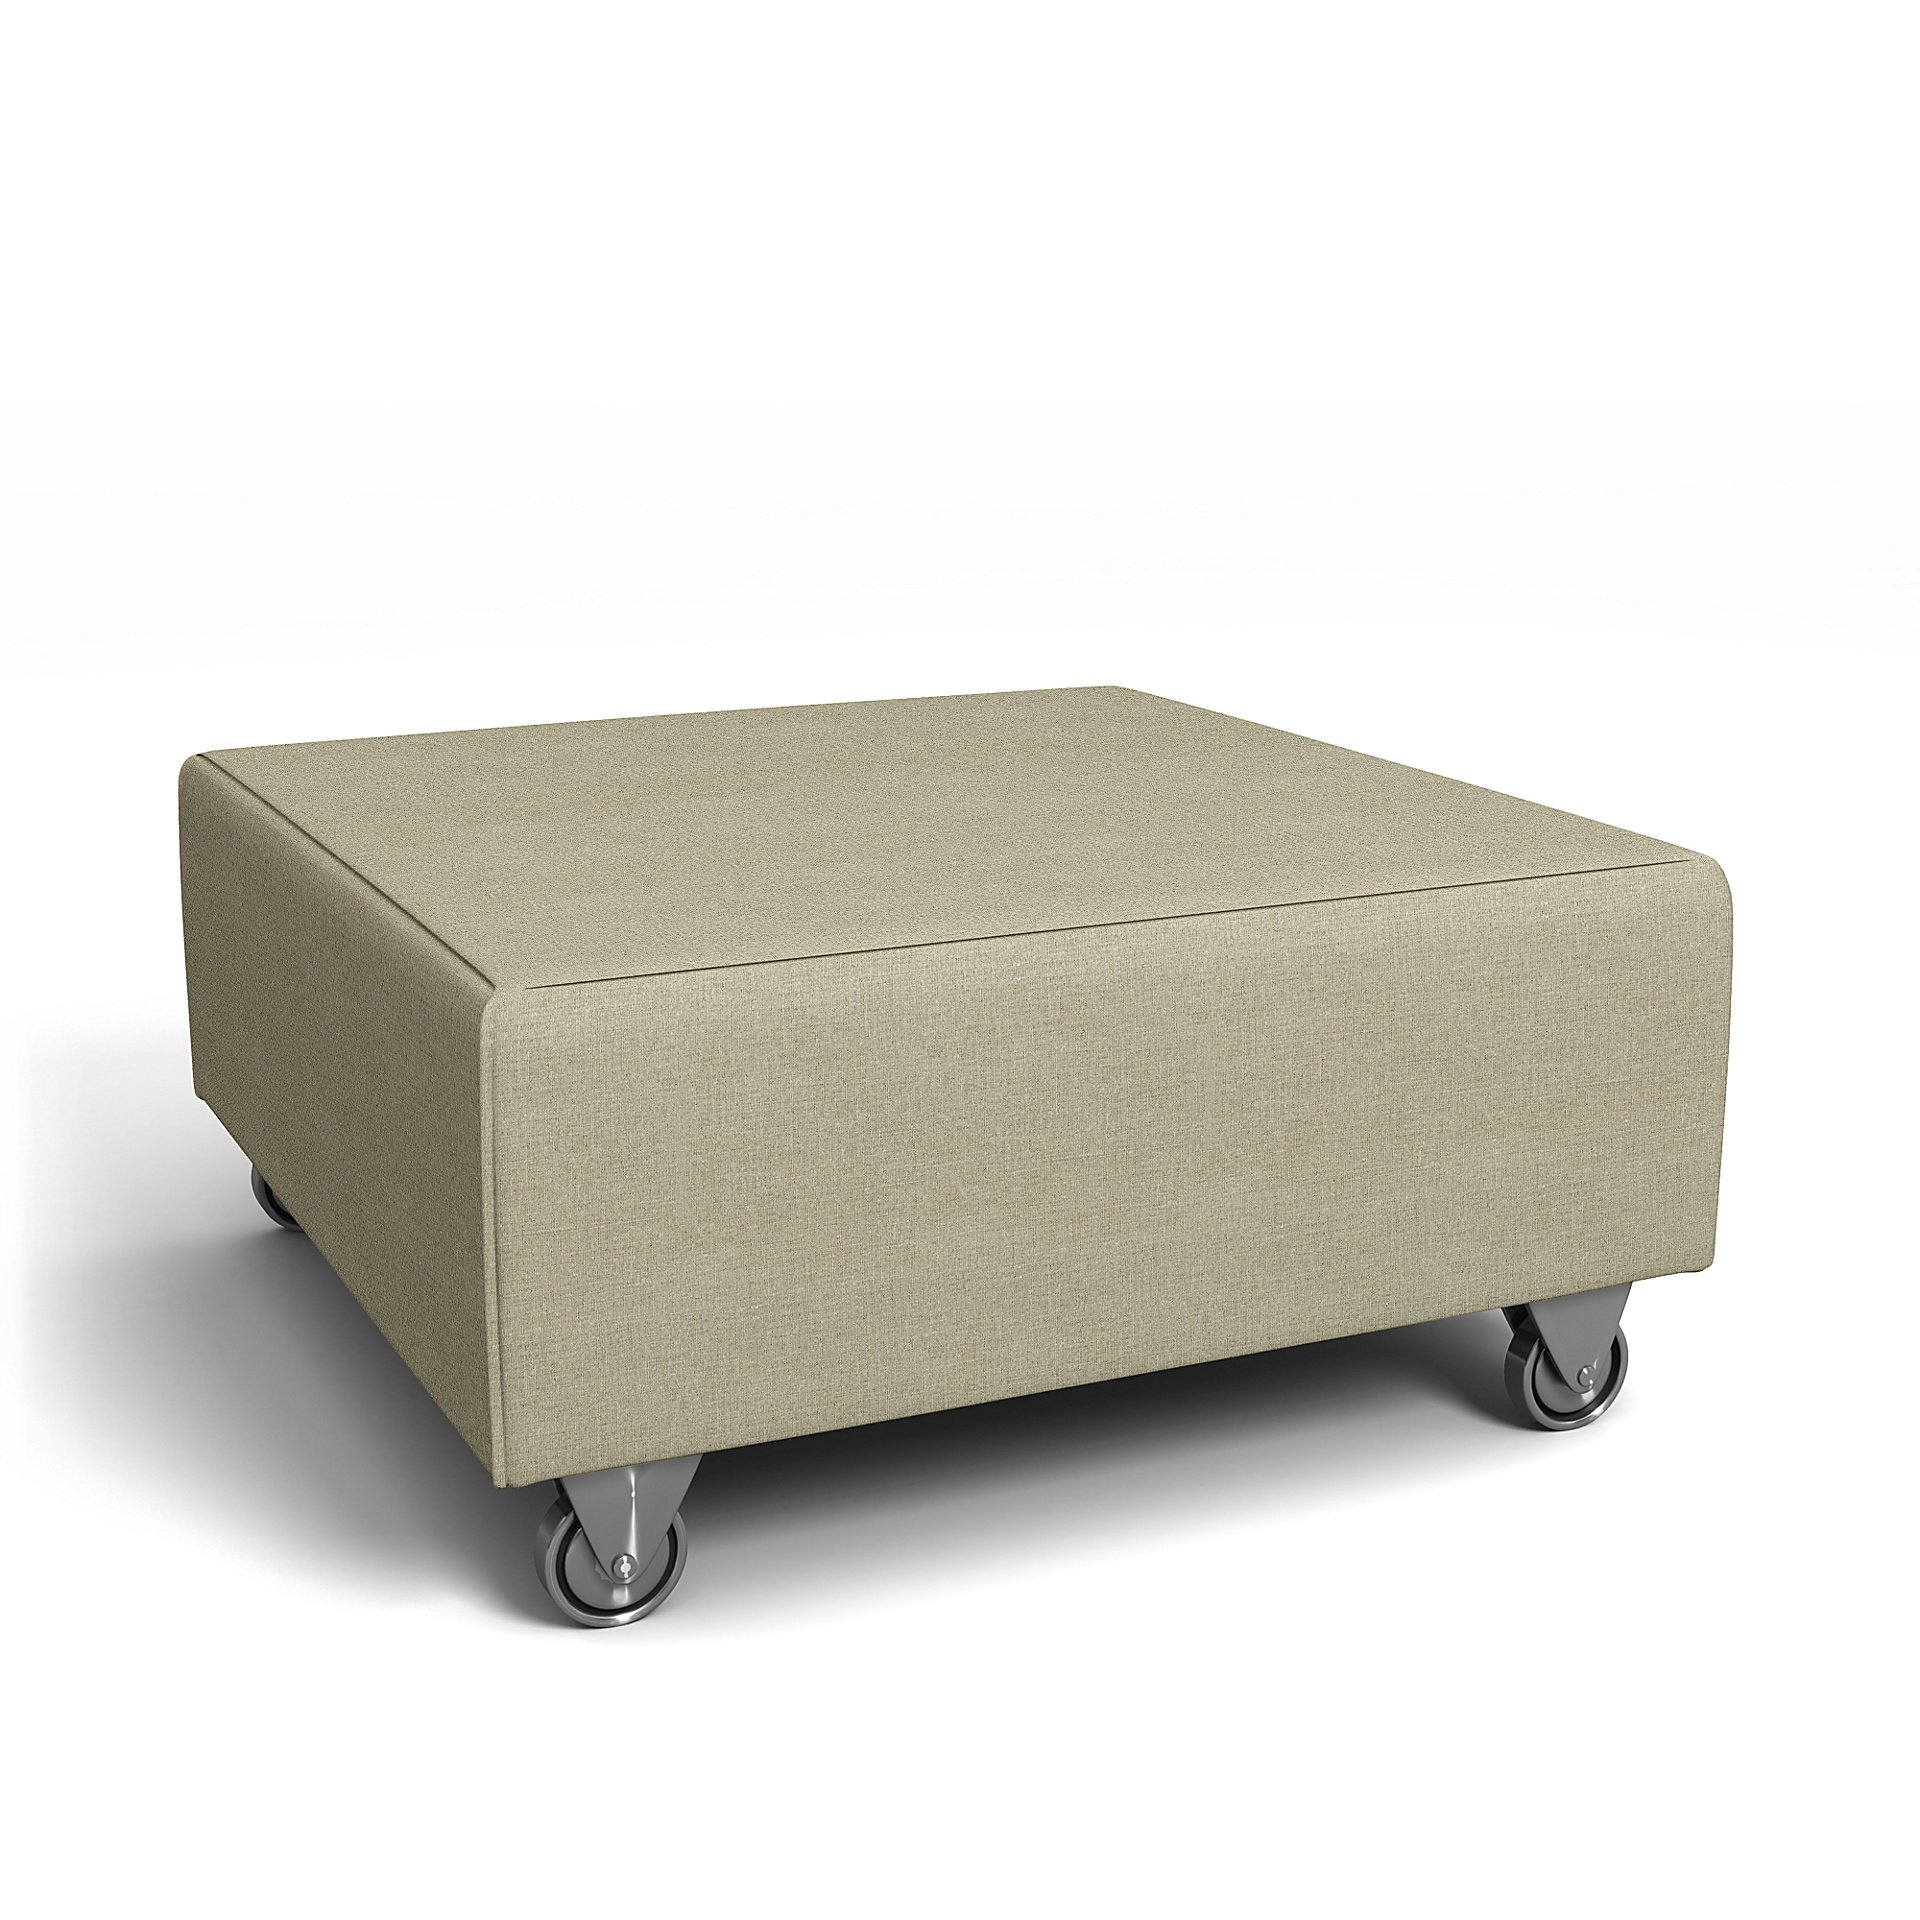 IKEA - Falsterbo Footstool Cover, Pebble, Linen - Bemz